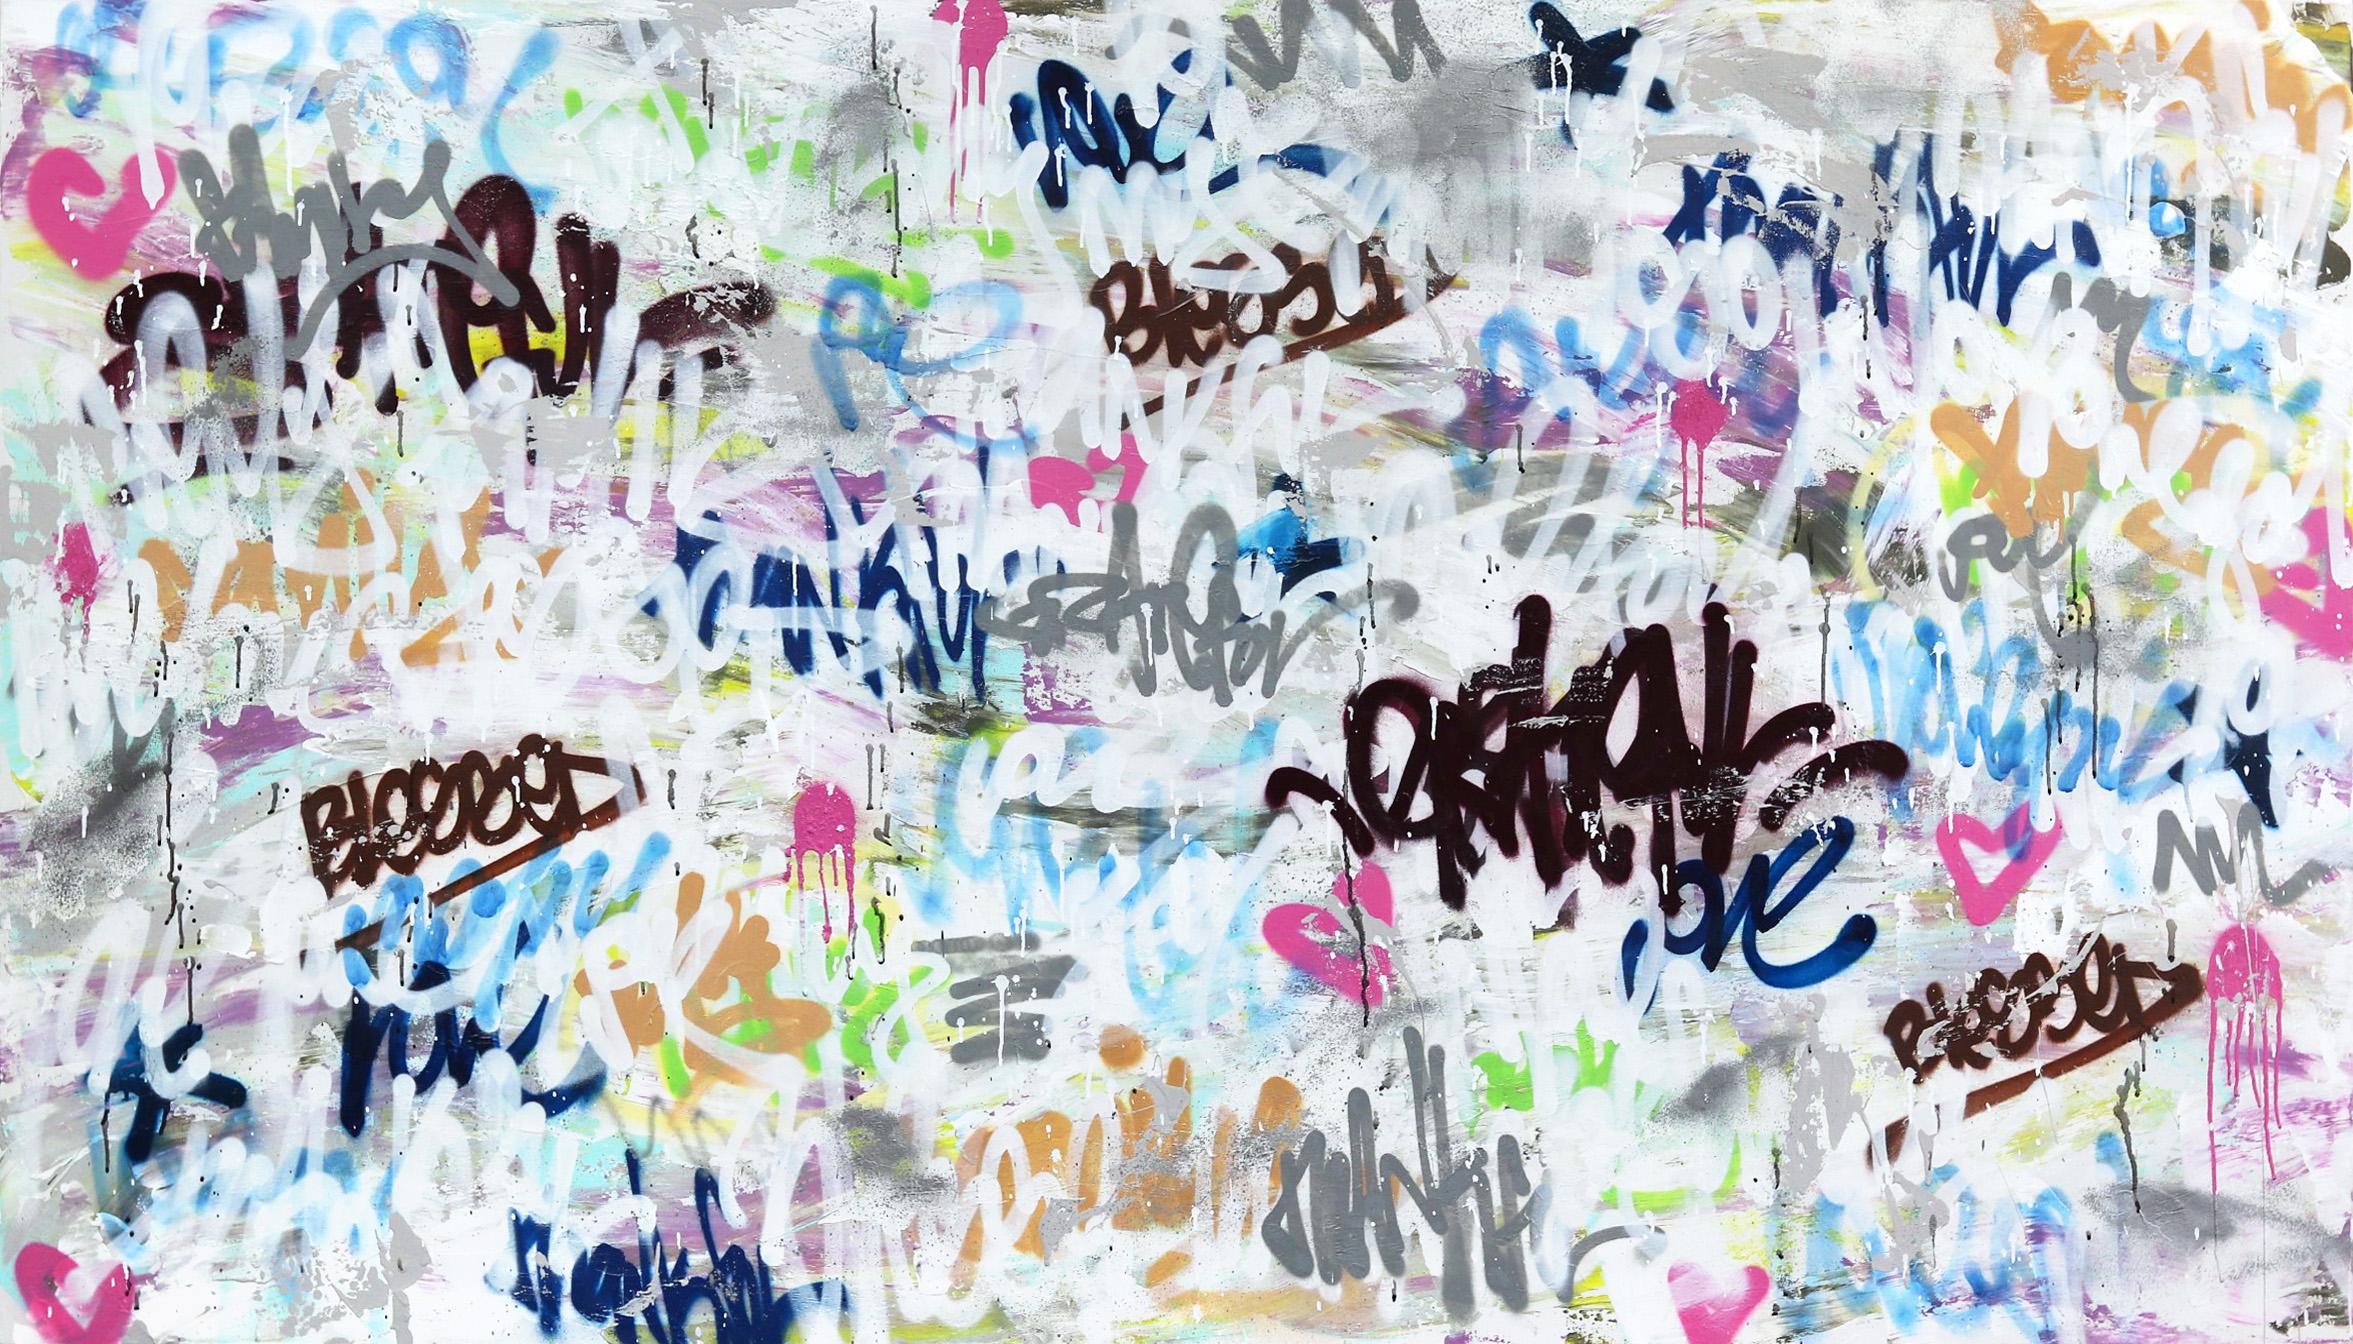 Wild Gänseblümchen – Großes Original Graffiti-Kunstwerk, geschichtet – Mixed Media Art von Amber Goldhammer